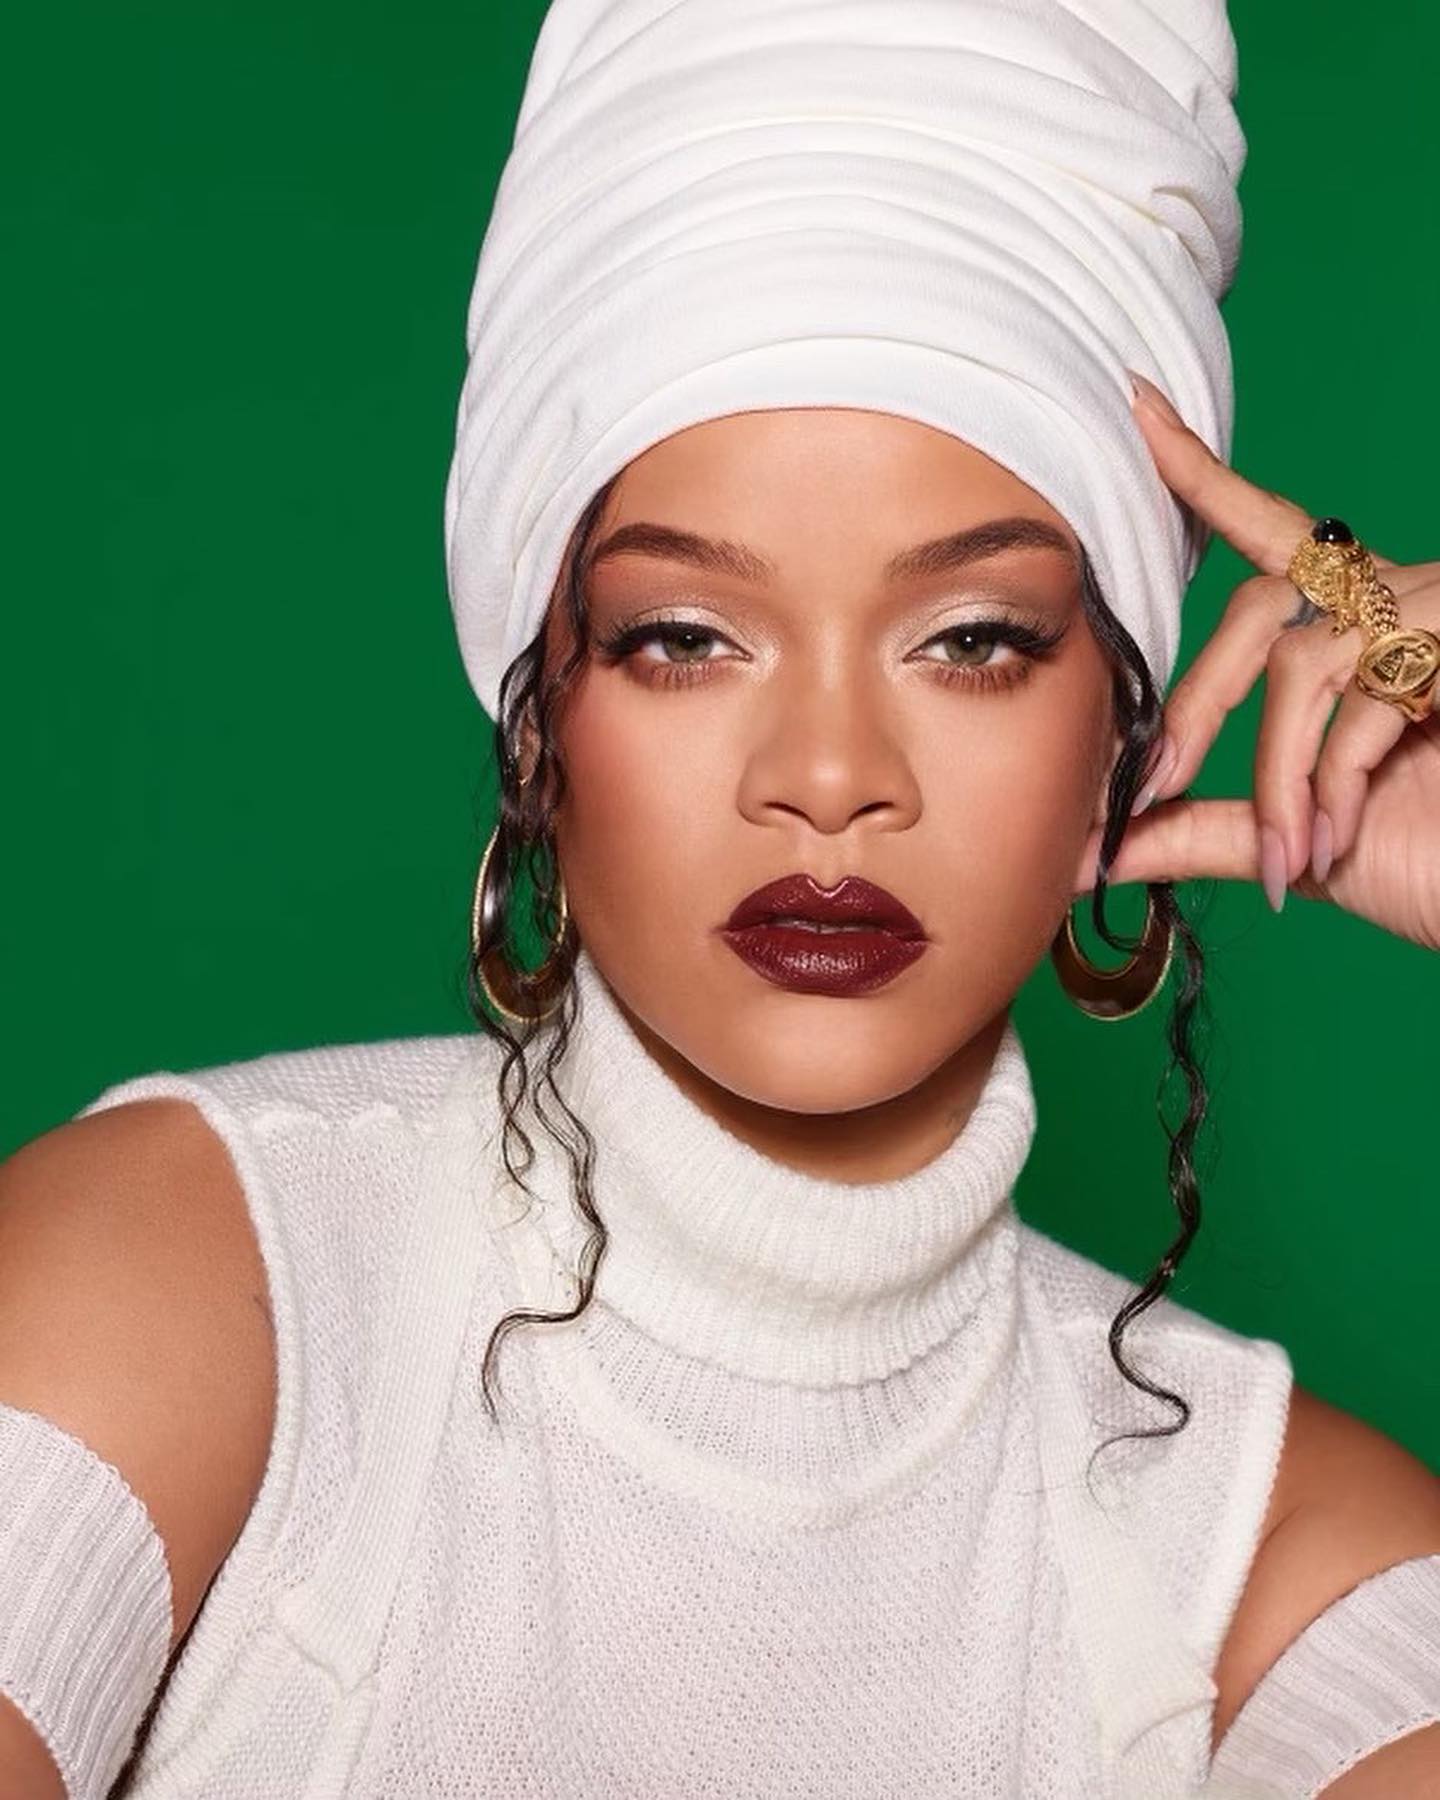 Foto: Reprodução/Instagram/Rihanna